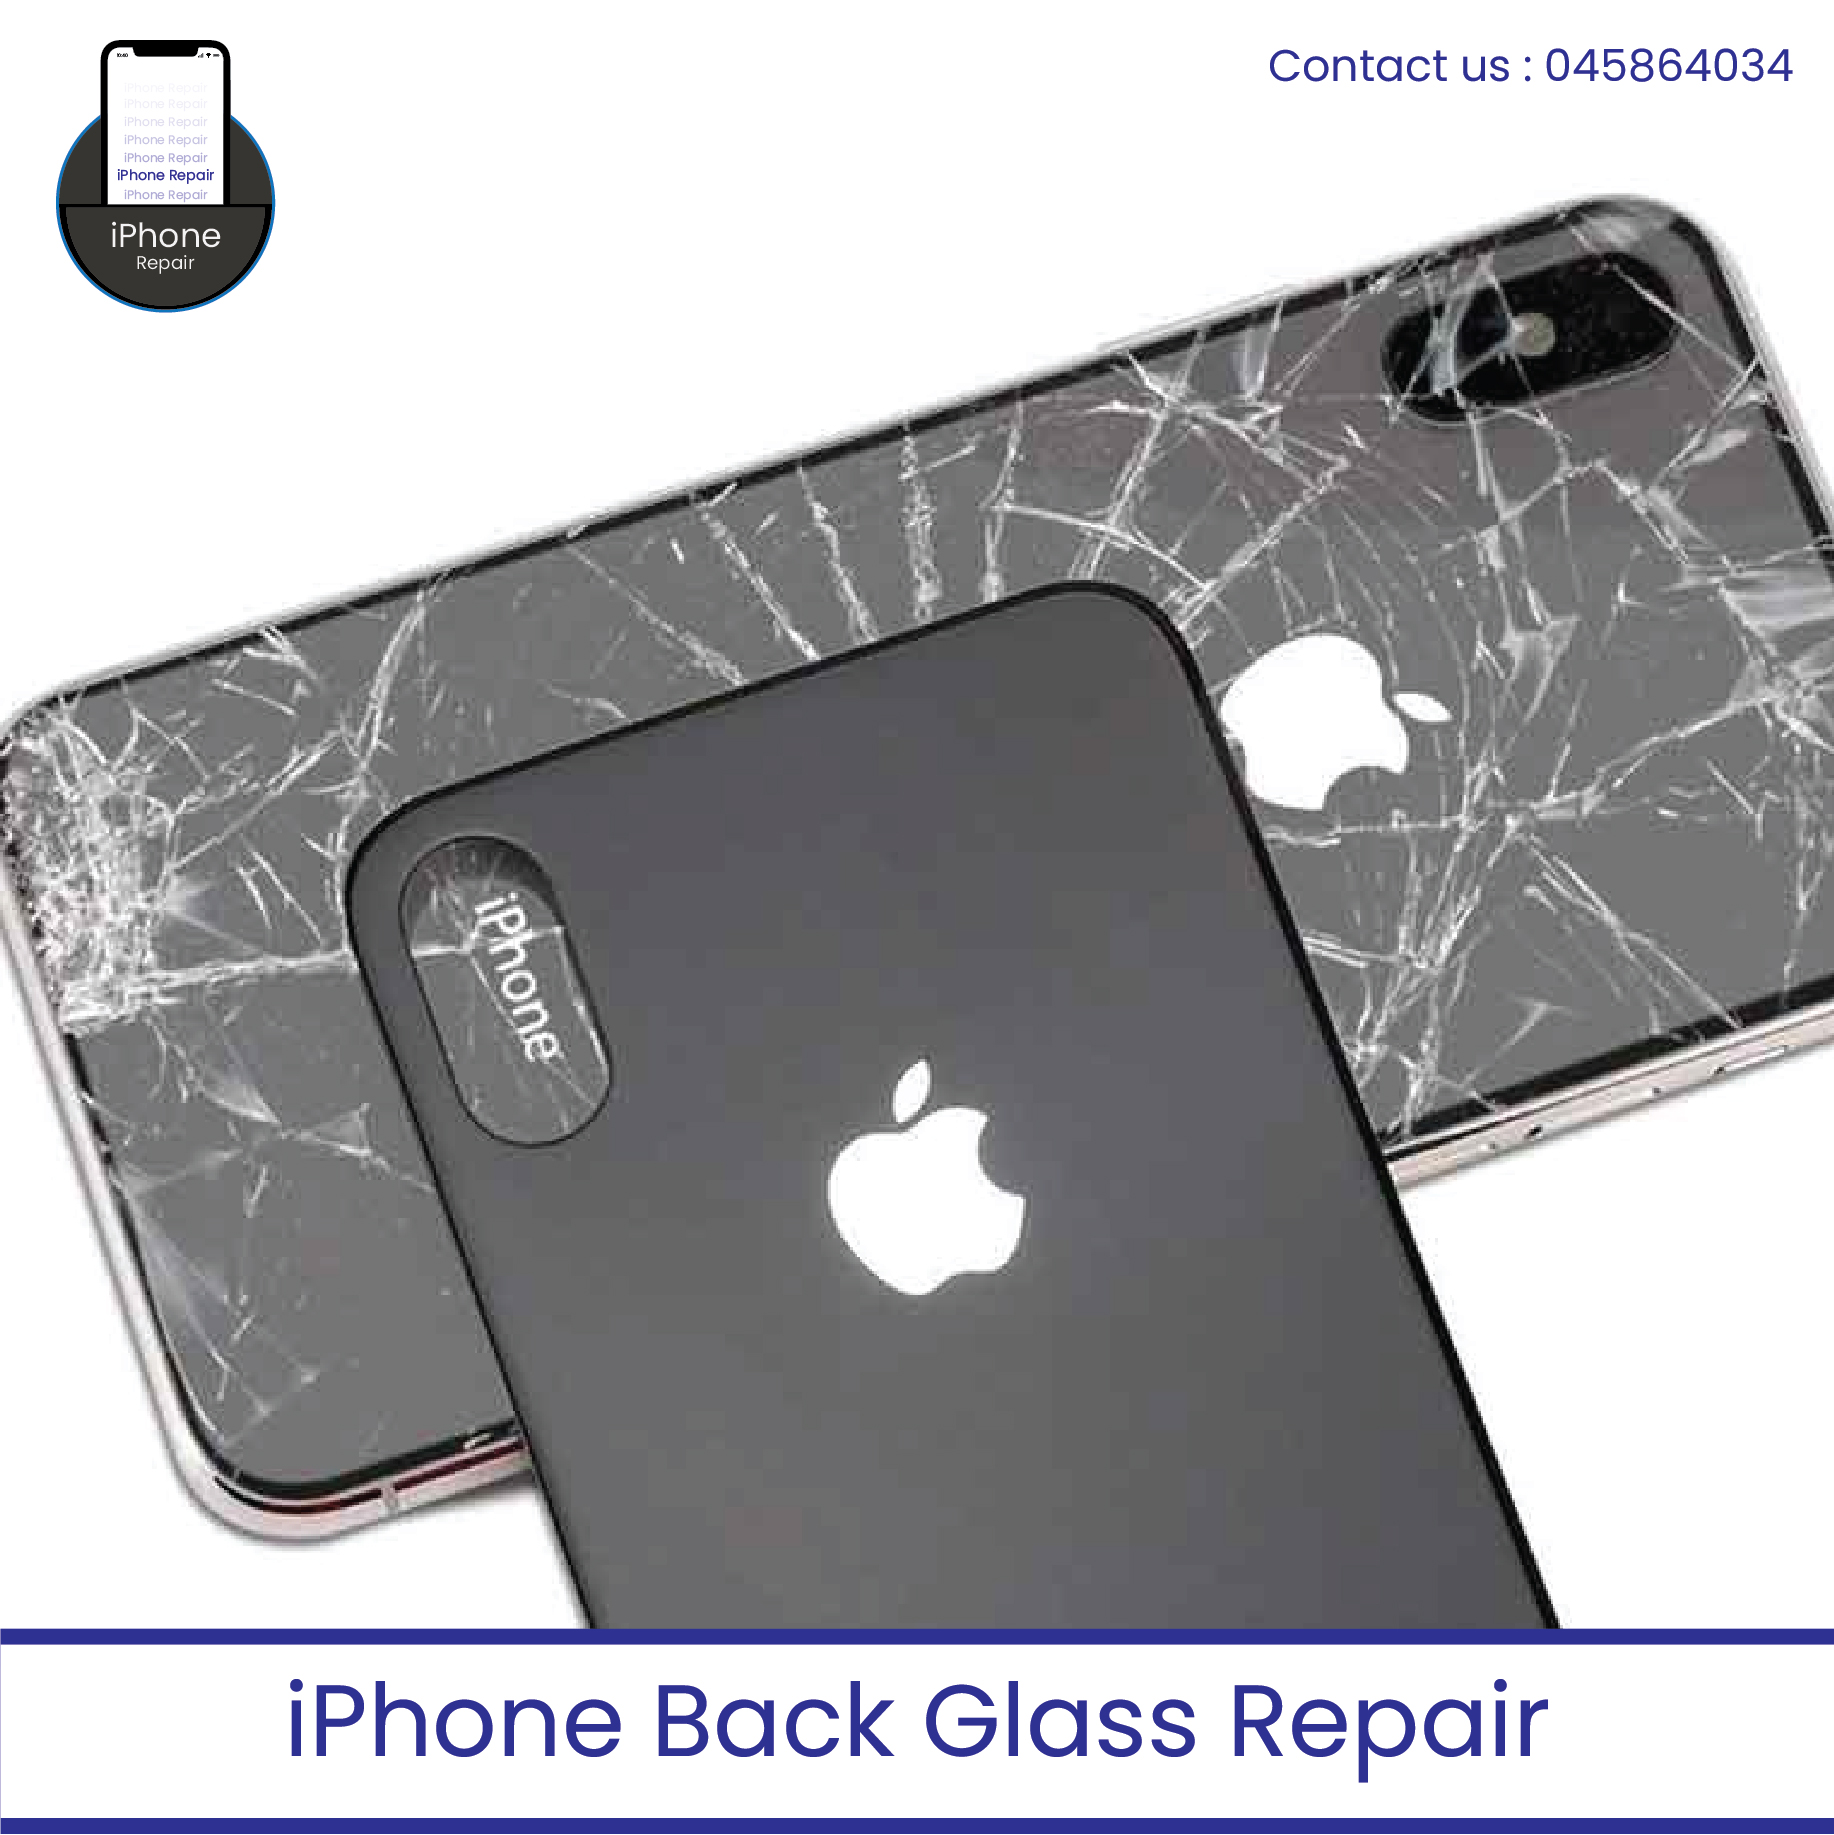 iPhone Back Glass repair